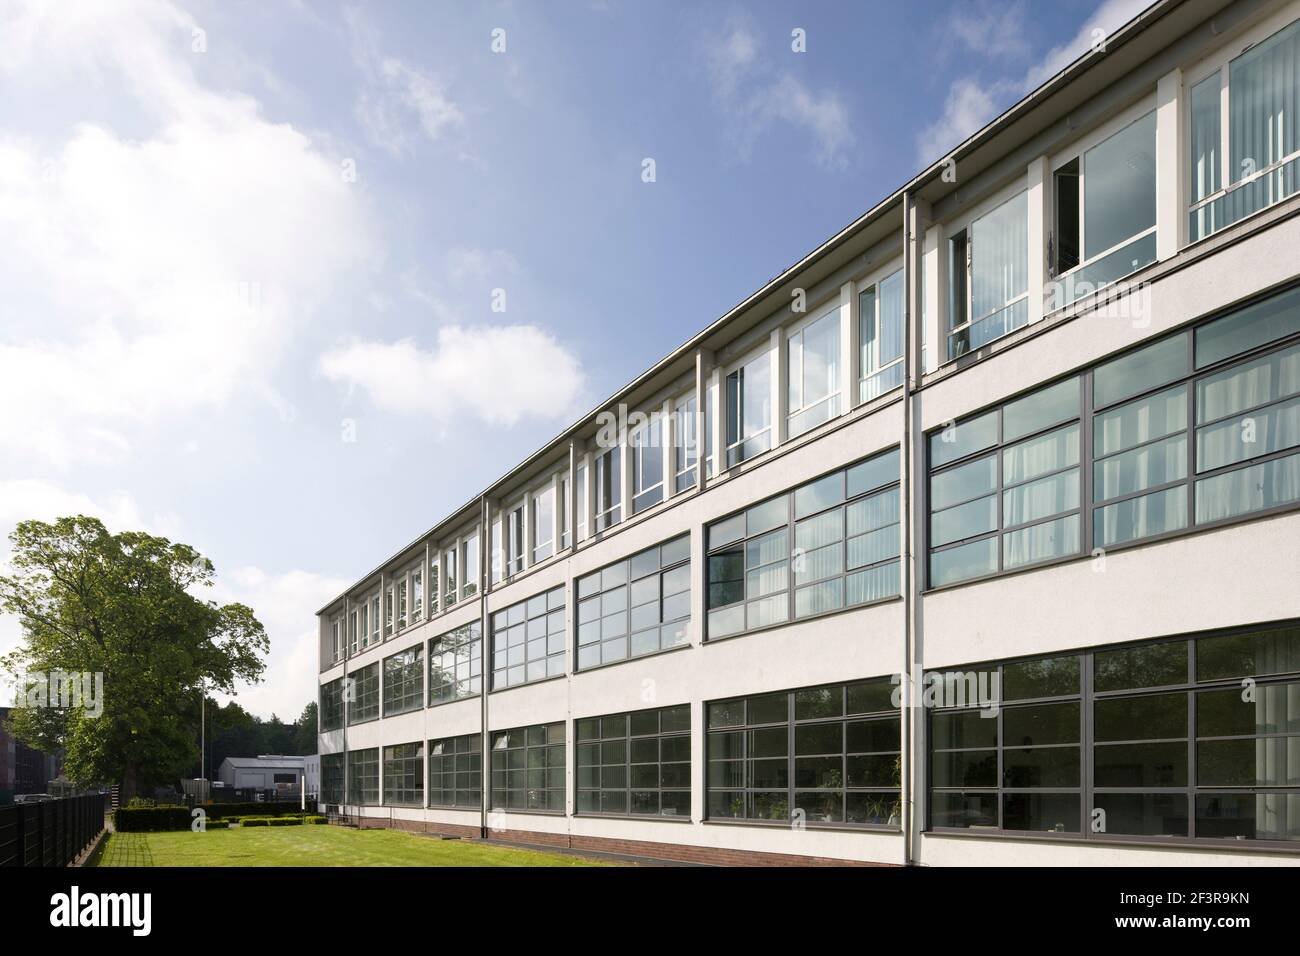 GEB‰udekomplex, in den 1950er Jahren nach PL‰nen von Mies van der Rohe erbaut, Krefeld, Vereingte Seidenweber AG 'Verseidag' Banque D'Images